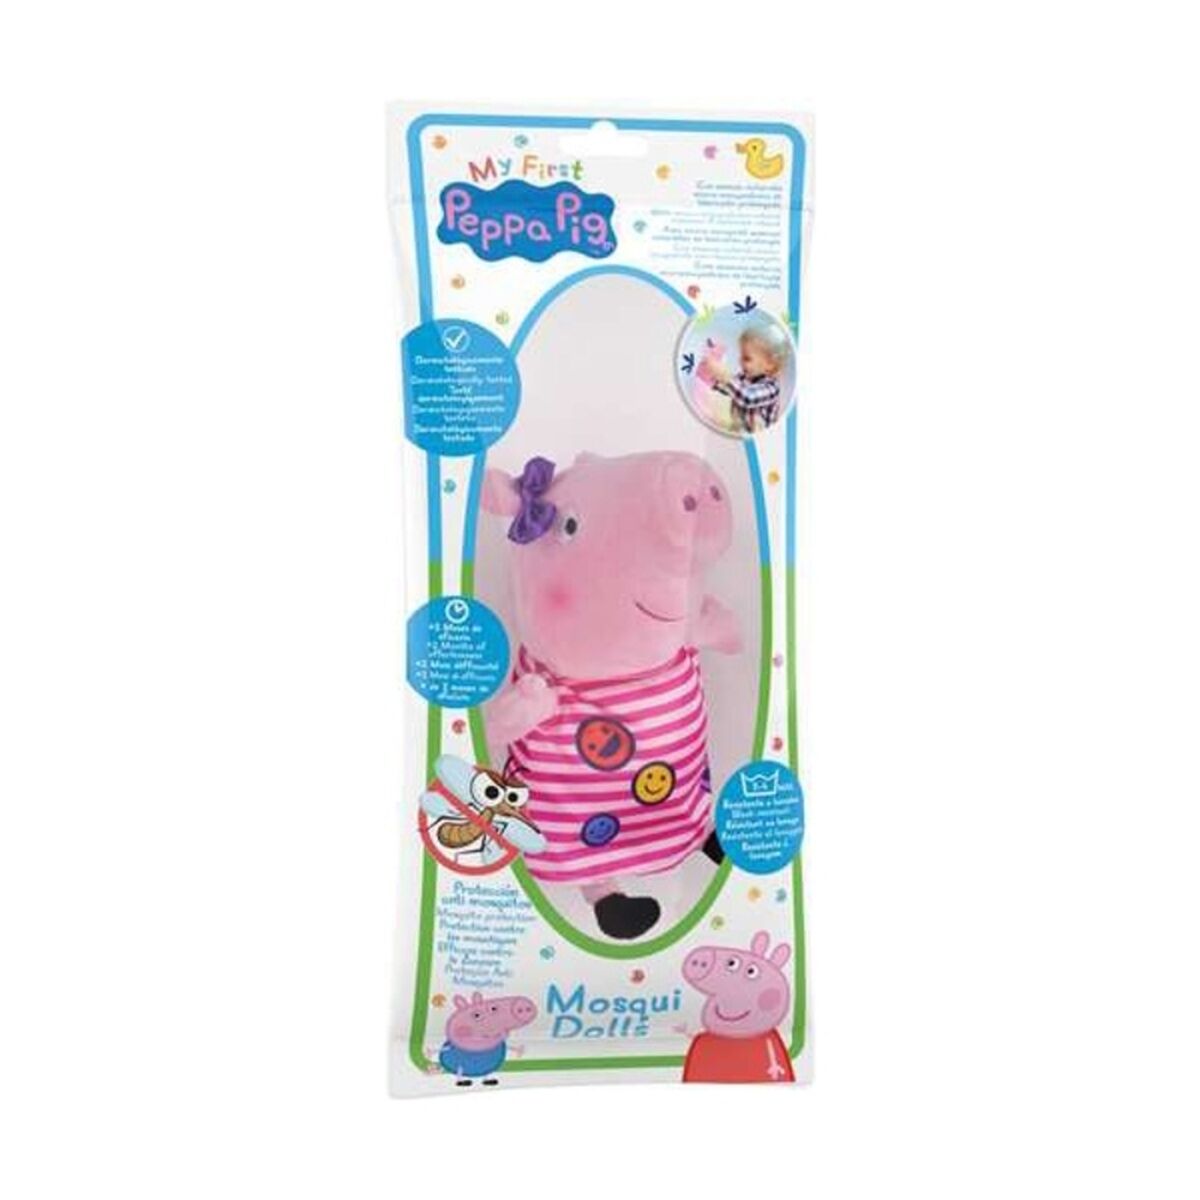 Fluffy toy Mosquidolls Peppa Pig 50400 20 cm 20cm